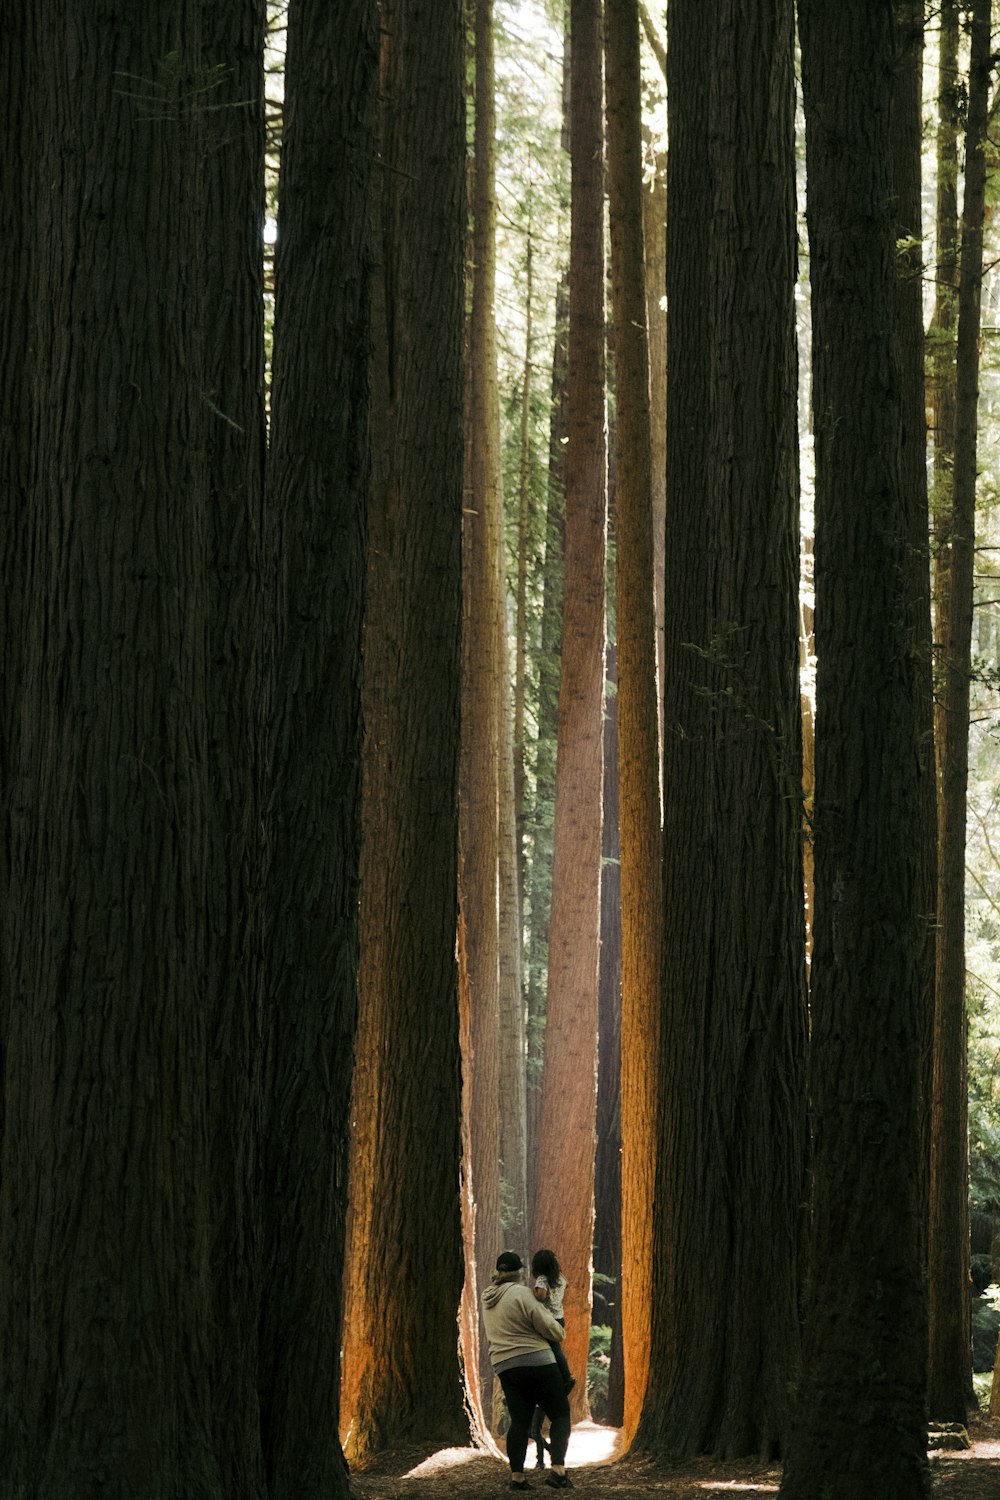 Una persona caminando por un bosque lleno de árboles altos